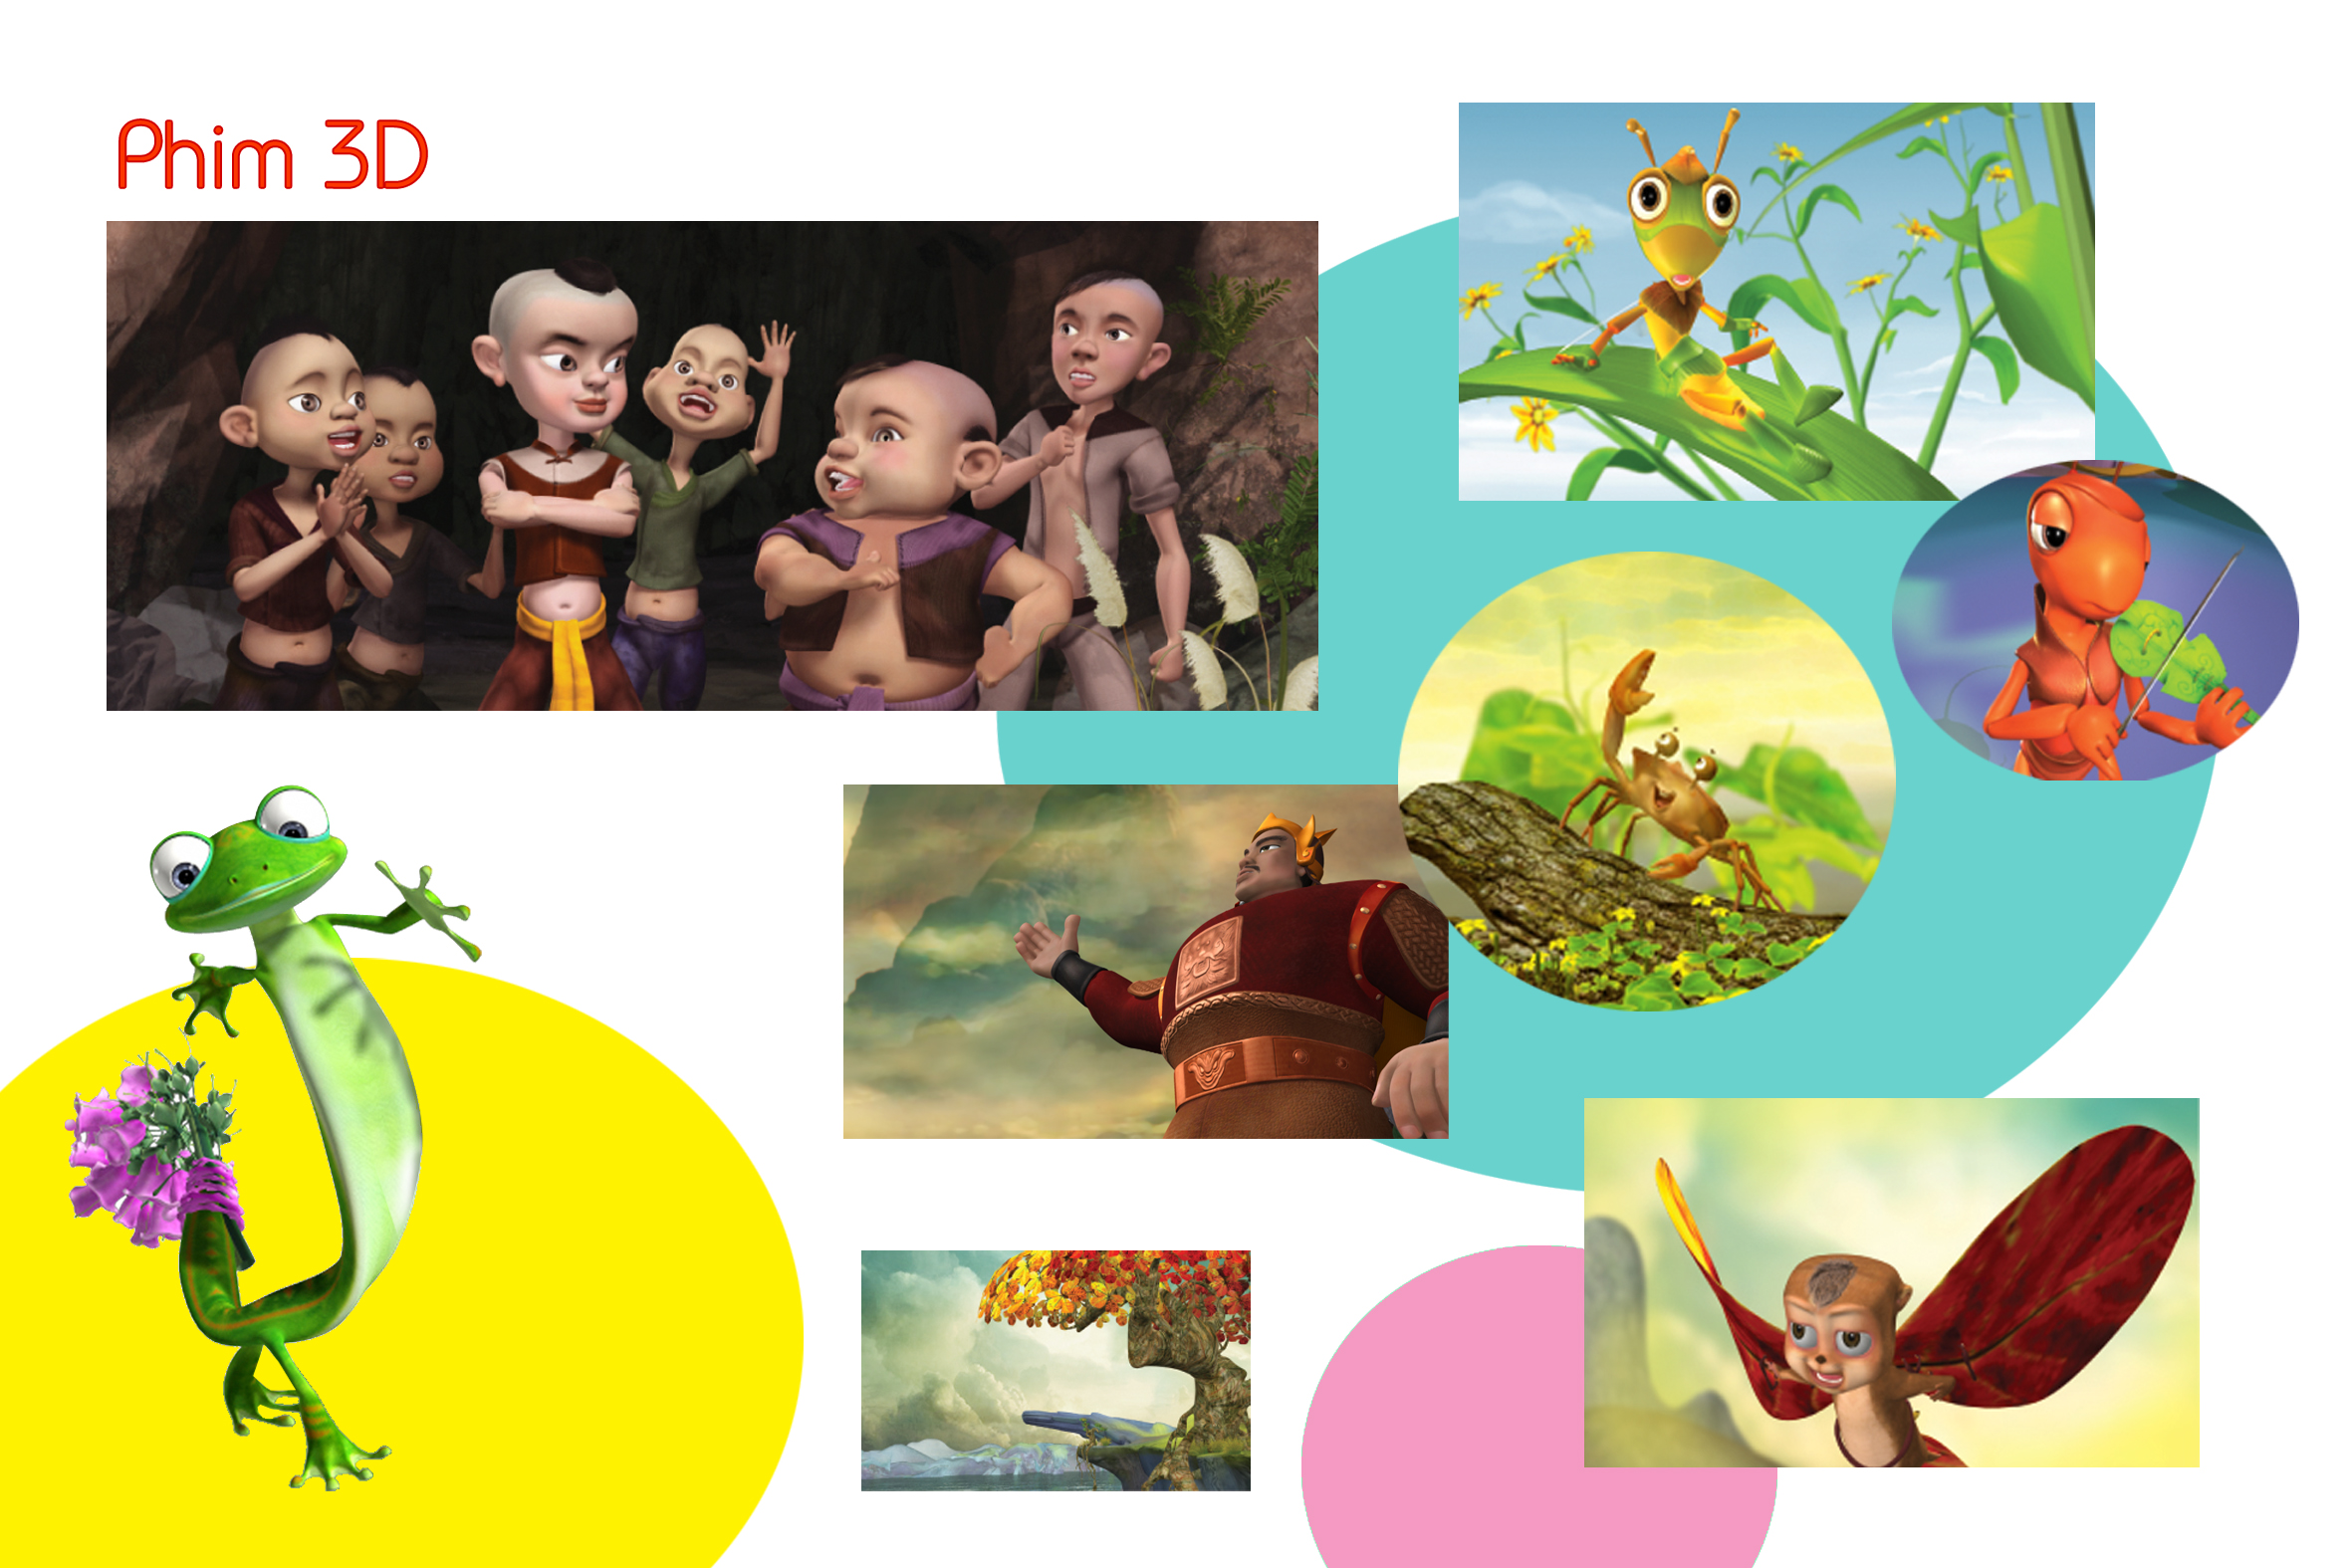 Khi sử dụng ứng dụng VTVGo, bạn sẽ có cơ hội để thưởng thức các bộ phim hoạt hình Việt Nam mới nhất cùng với gia đình và bạn bè. Với chất lượng hình ảnh và âm thanh tuyệt vời, bạn sẽ được đắm chìm trong thế giới đầy phép thuật của hoạt hình.